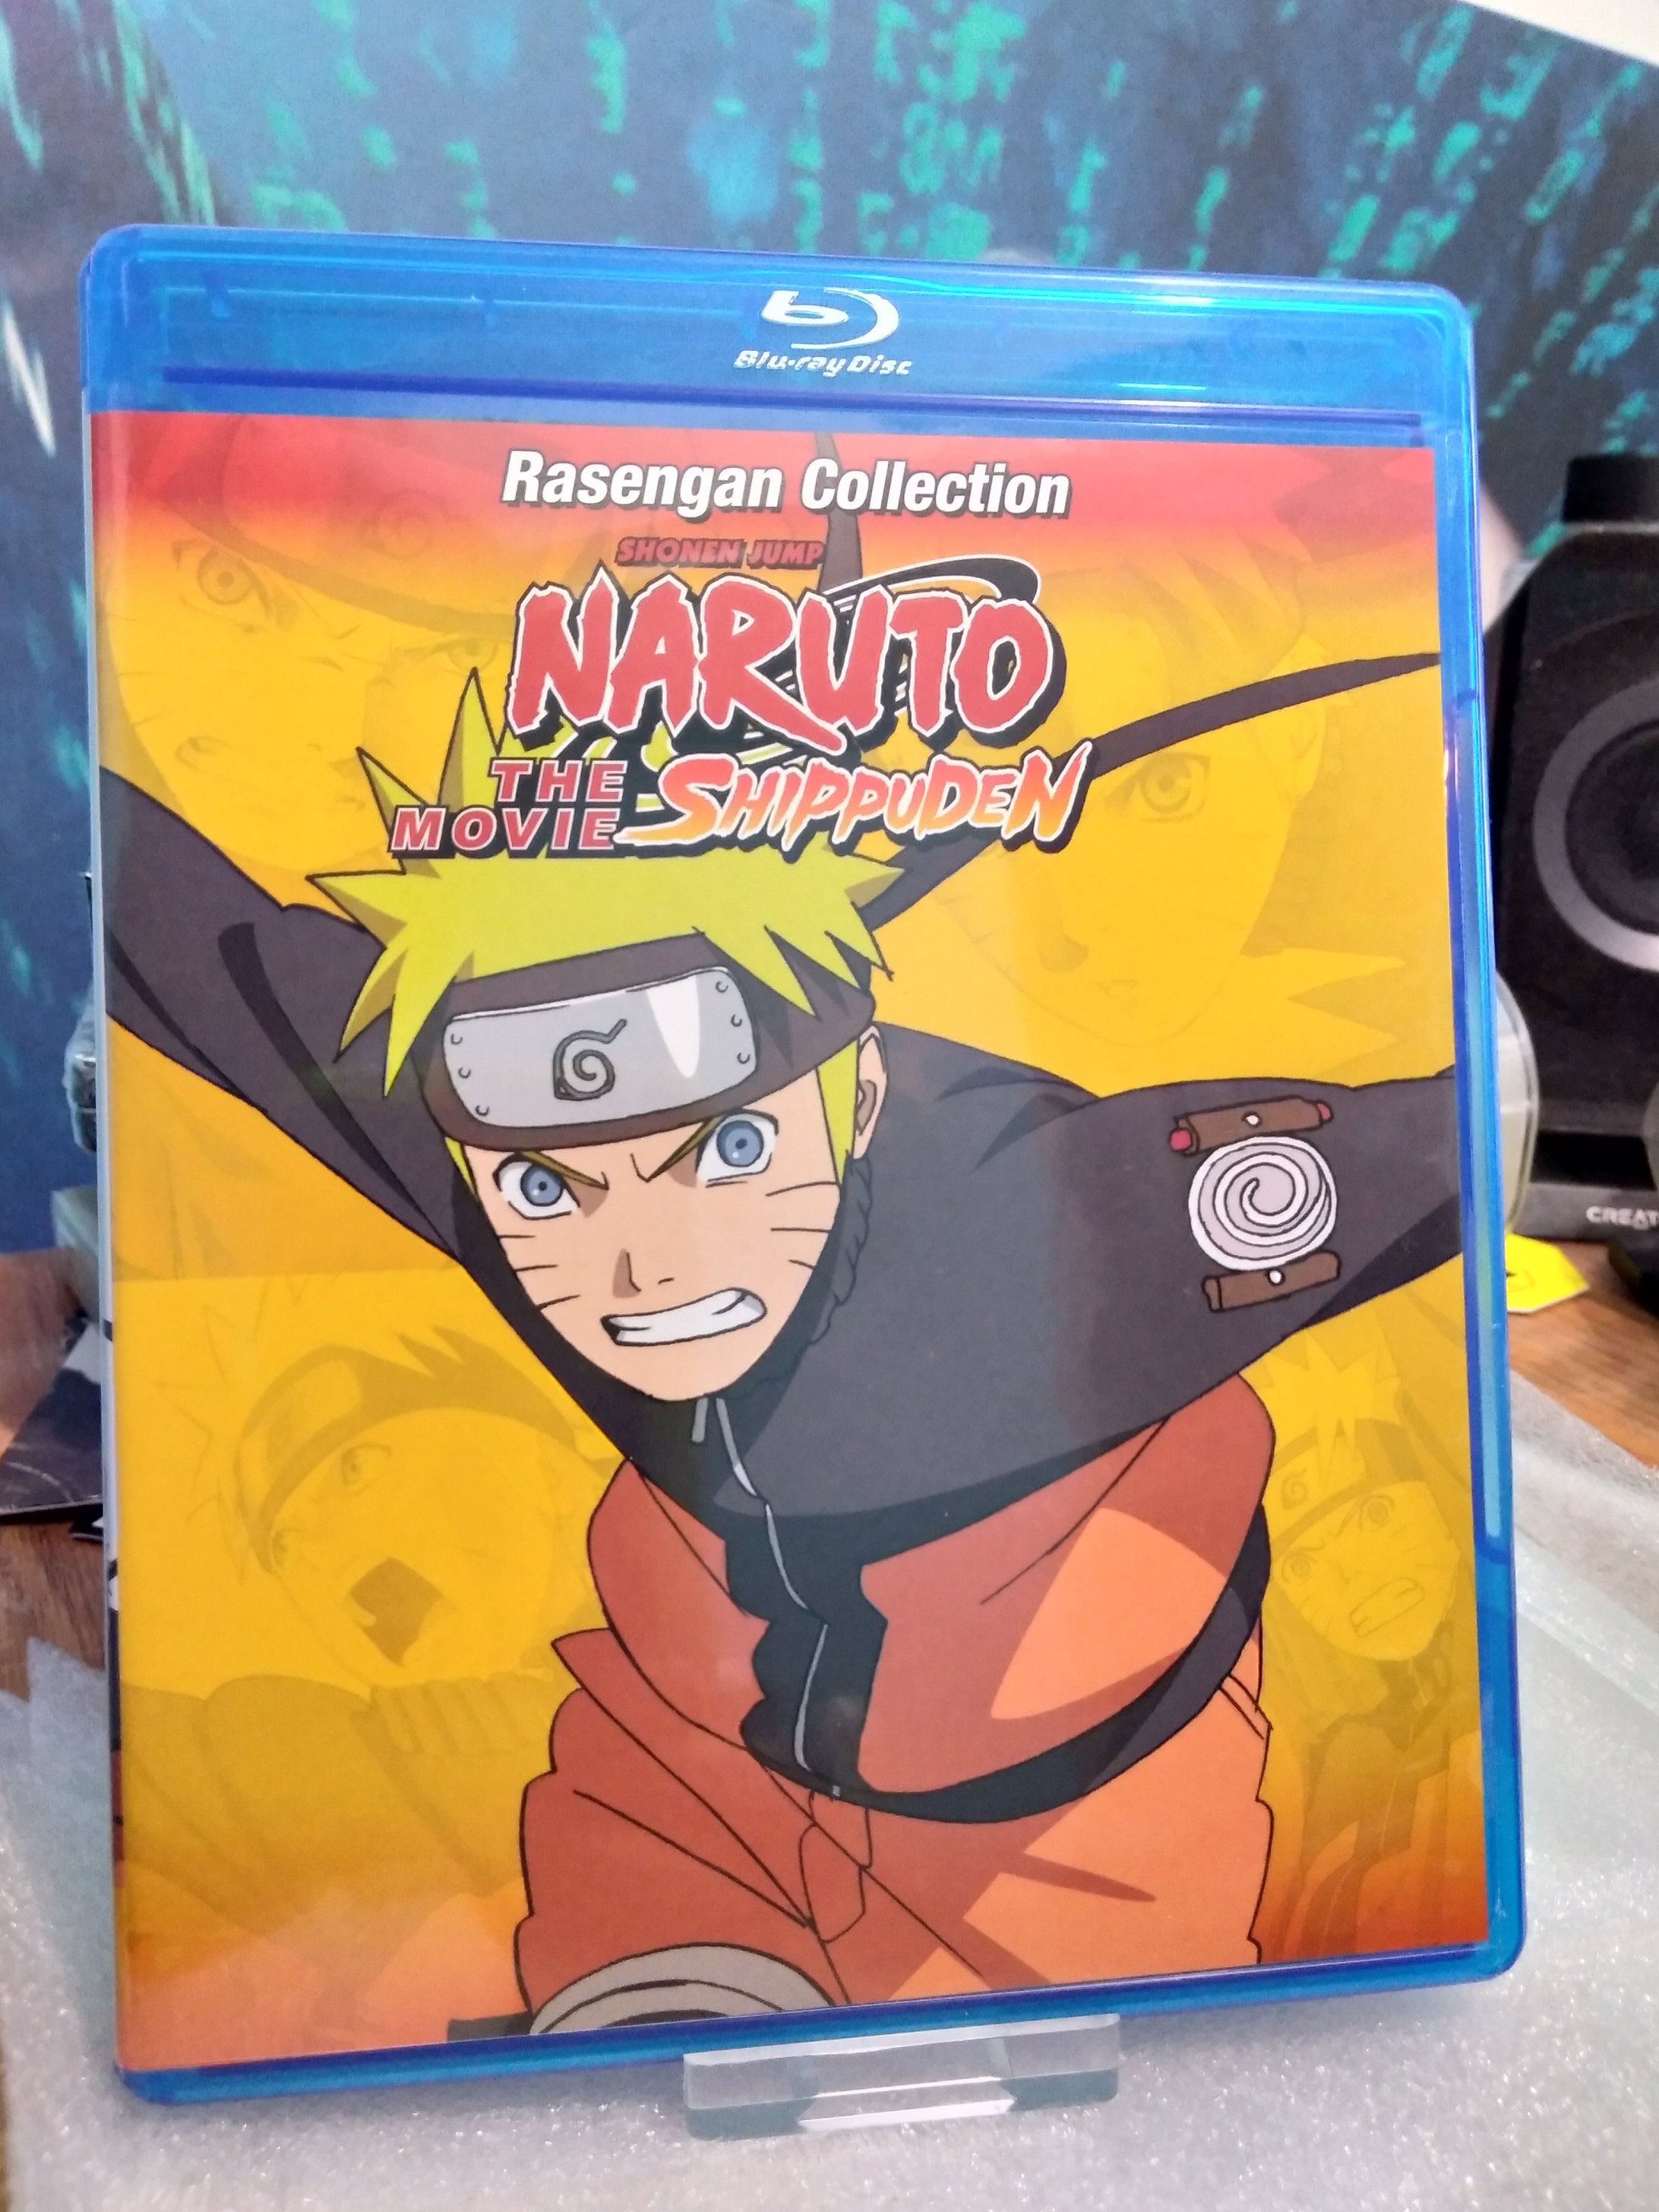 Naruto Shippuden: The Movie - Rasengan Collection - Official